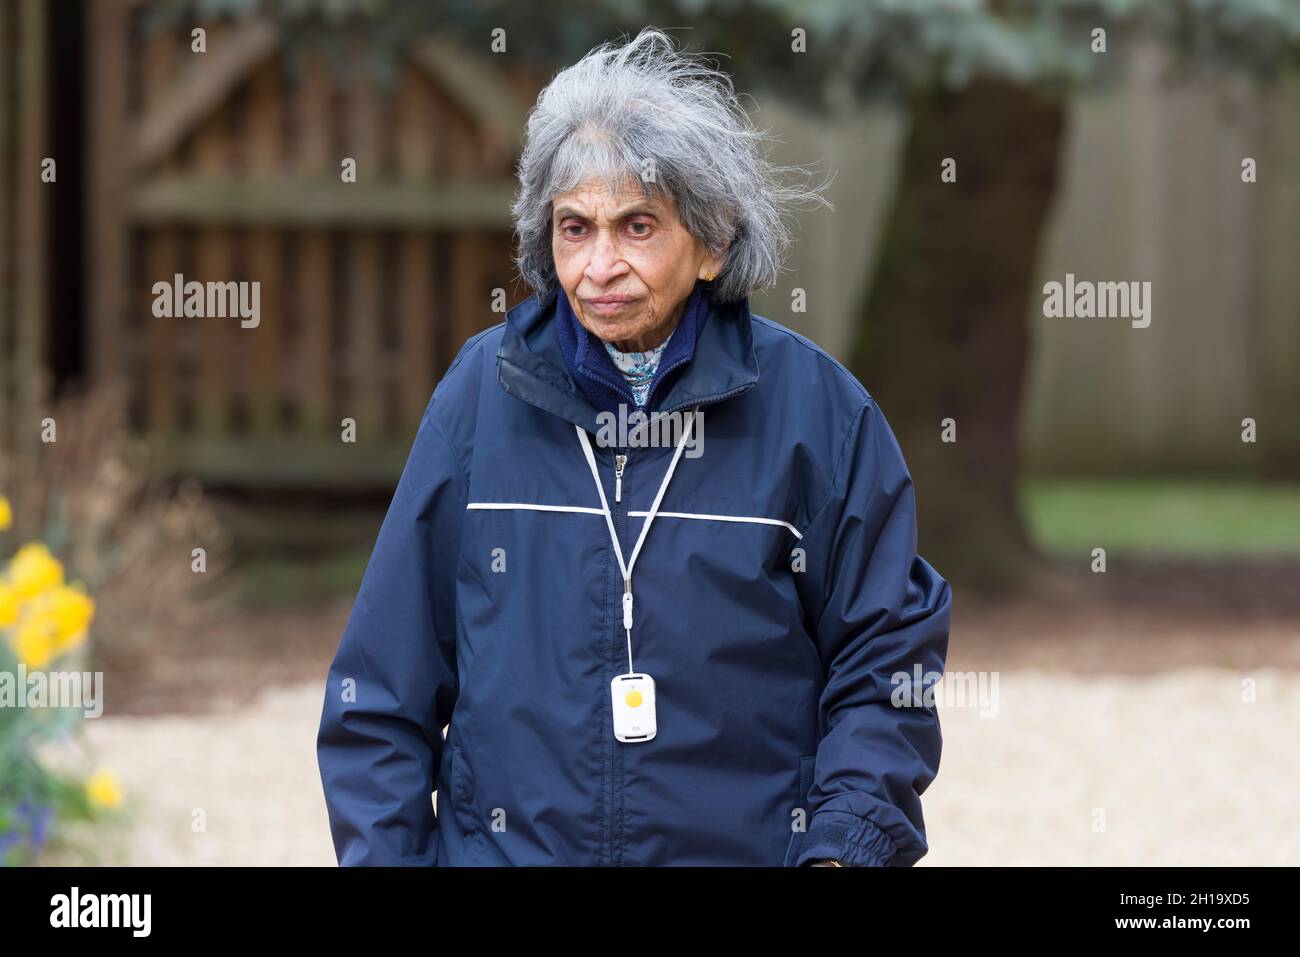 Ältere asiatische indische Frau, die im Winter im Freien geht, Großbritannien. Tragen Sie warme Kleidung und einen SOS-Anhänger mit persönlichem Sicherheitsalarm Stockfoto